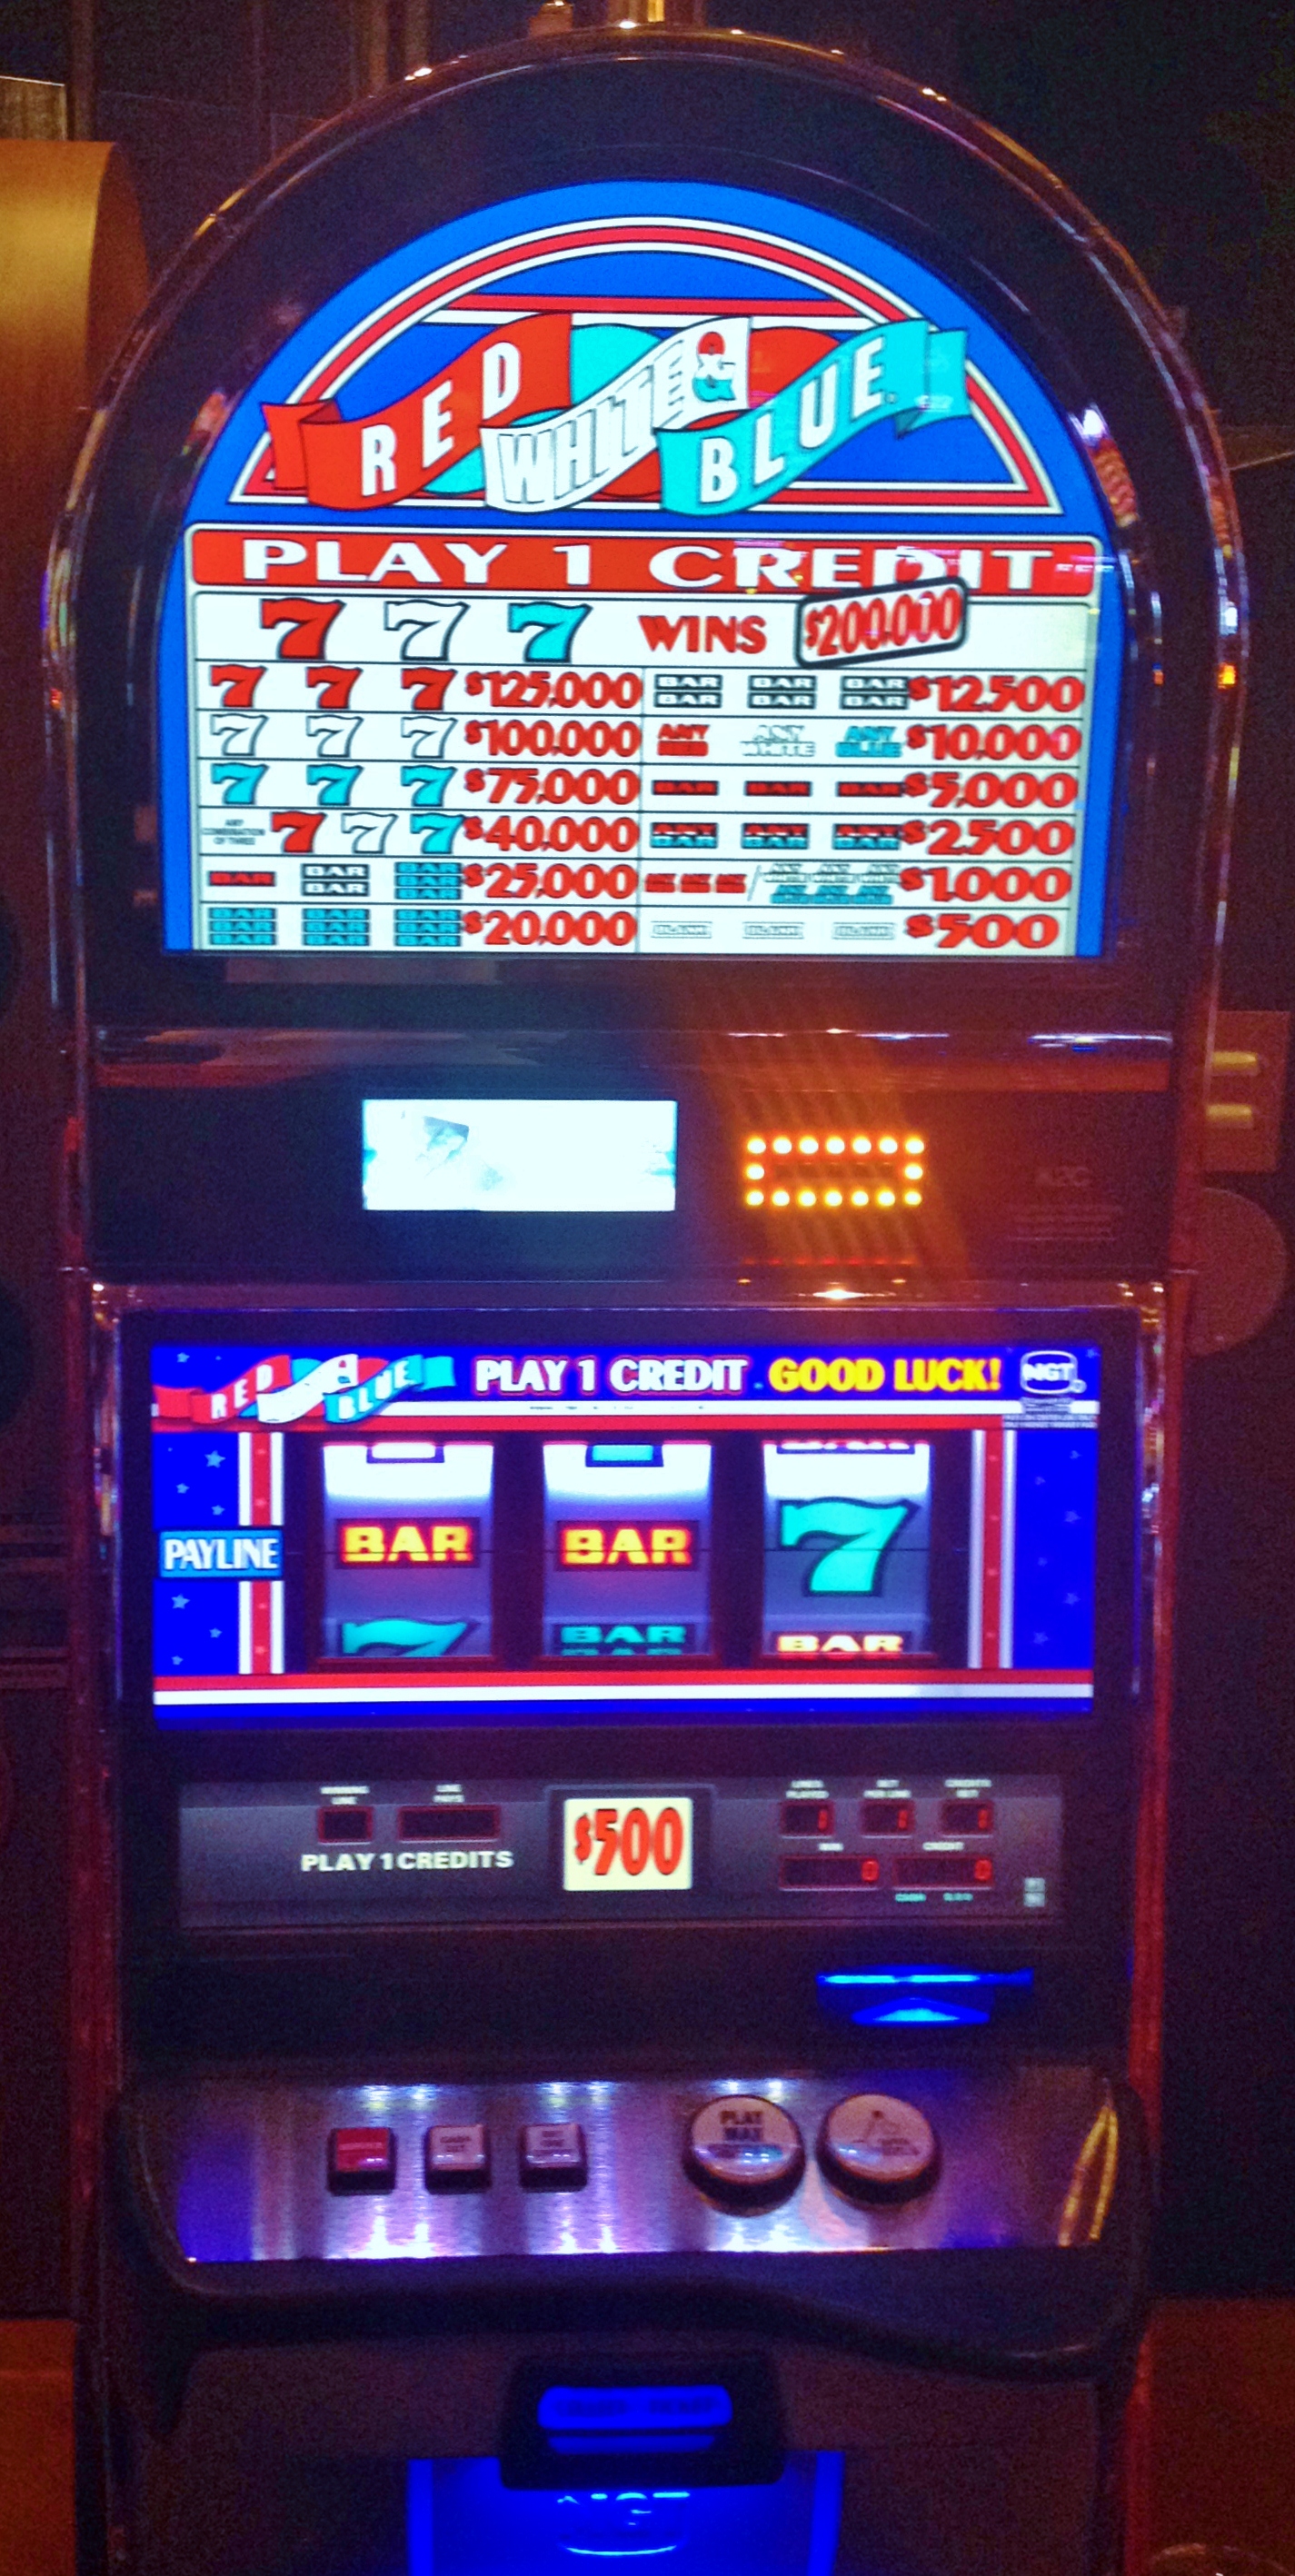 Slot machine jackpot wins